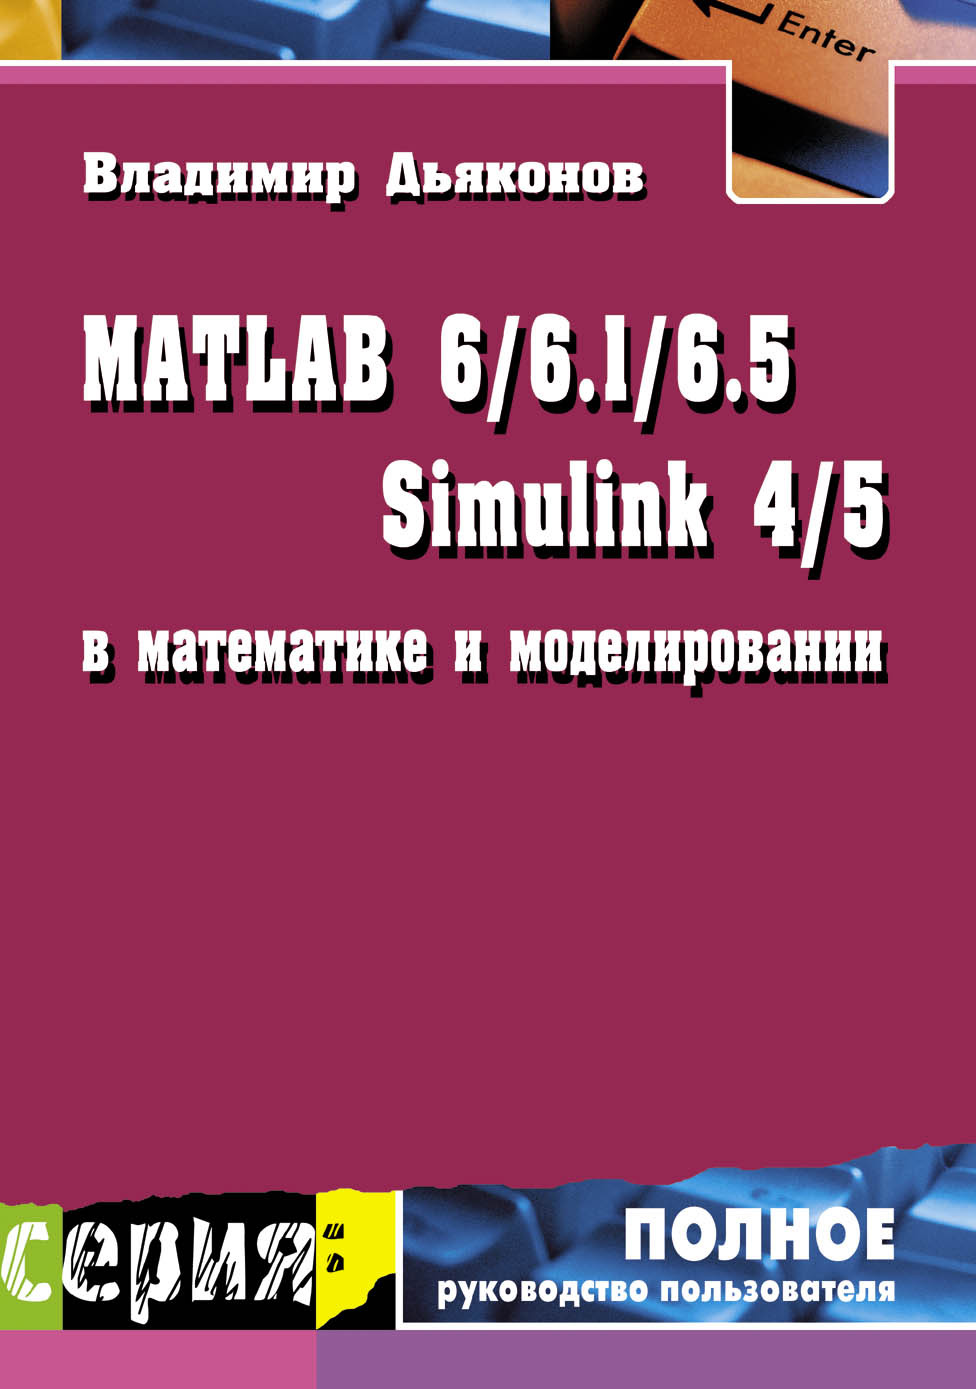 Книга Полное руководство пользователя MATLAB 6/6.1/6.5 + Simulink 4/5 в математике и моделировании созданная В. П. Дьяконов может относится к жанру программы, радиоэлектроника, техническая литература. Стоимость электронной книги MATLAB 6/6.1/6.5 + Simulink 4/5 в математике и моделировании с идентификатором 8333291 составляет 250.00 руб.